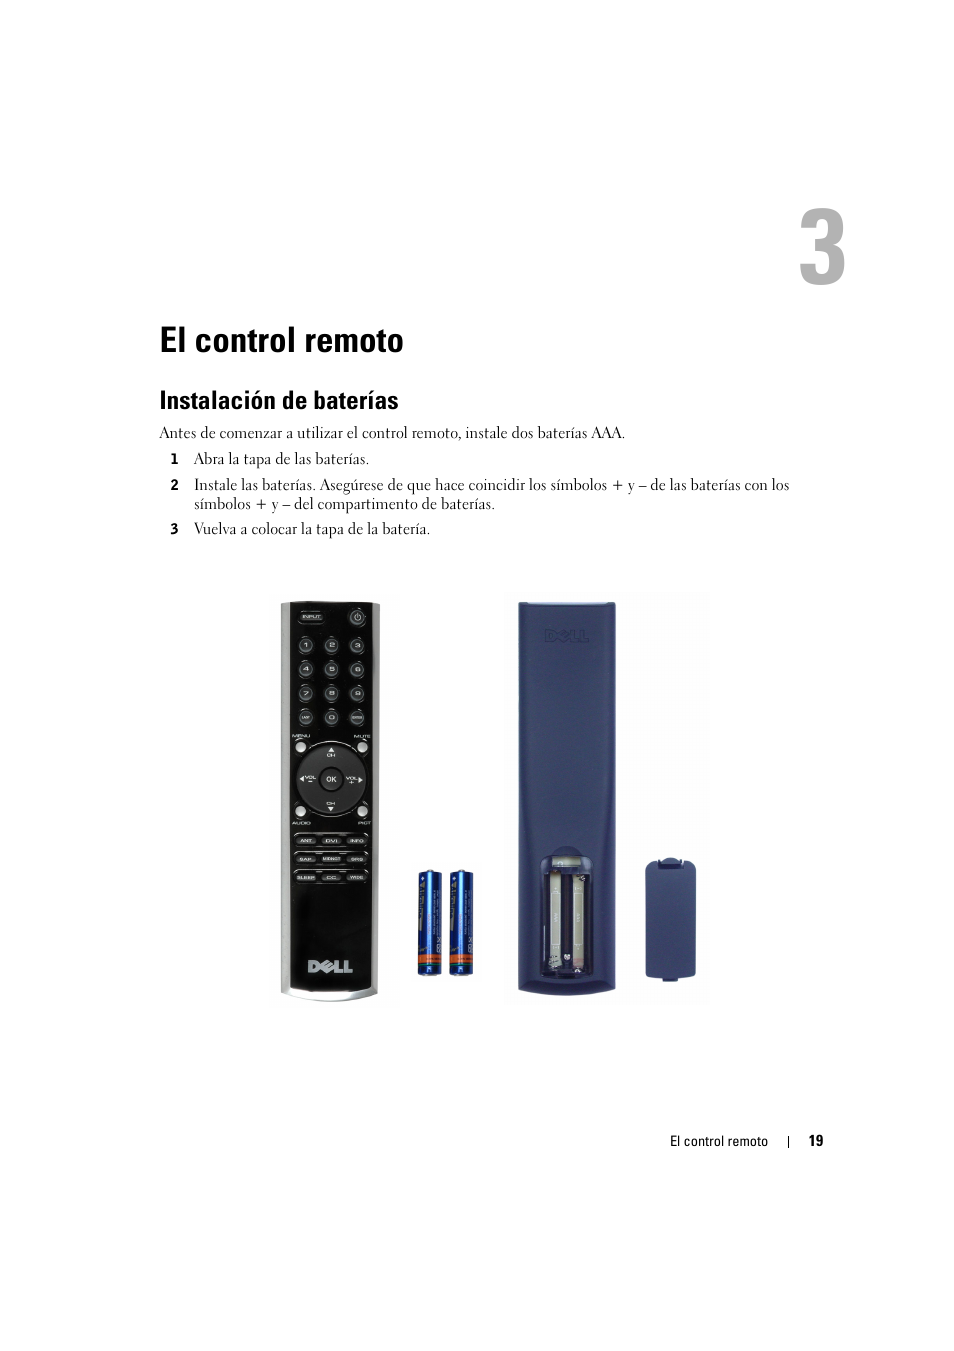 El control remoto, Instalación de baterías | Dell LCD TV W2606C Manual del usuario | Página 19 / 60